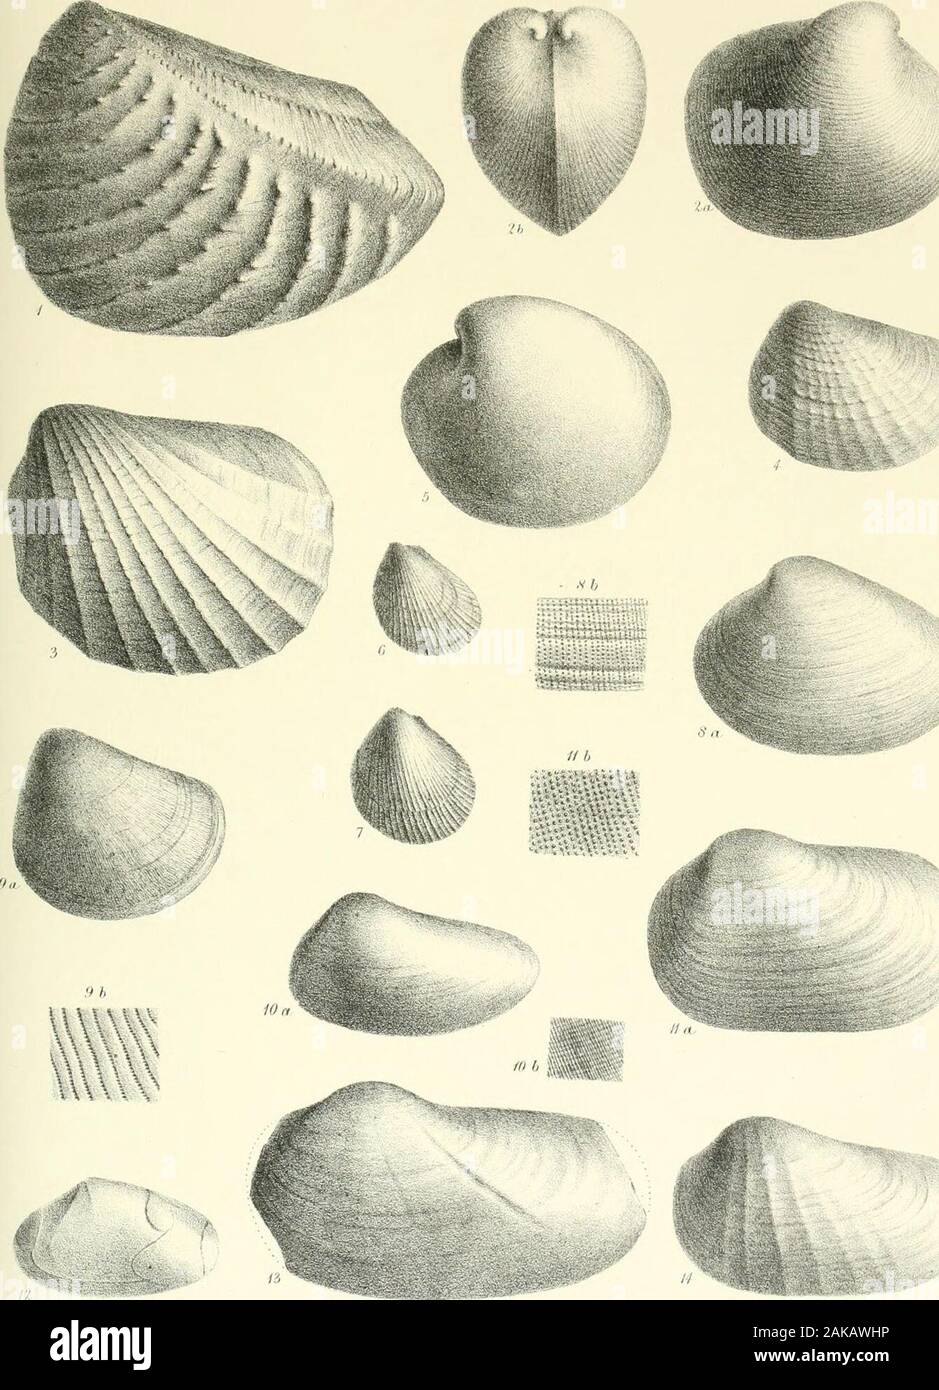 Una monografia di molluschi provenienti dal Grande Oolite principalmente da Minchinhampton e la costa dello Yorkshire . Scheda. XV. Fig. 1. Trigonia decorata, p. 133. 2a, b. Ceroinya concentrica, p. 108. 3. 833111311111 Pholadoniya, p. 123. 4. " Heraulti, p. 124. 5. Isocardia cordata, p. 135. 6. 7. Avicula Braamburiensis, p. 129.8a. Gresslya peregrina, p. 138. 8b. Porzione di superficie, ingrandite. da. Lima punctatum, p. 130. 9b. Porzione di superficie. 10a. Myacites decurtatus, p. 137. 10b. Porzione di superficie. 11a. Myacites Beanii, p. 136. lib. Superficie di ditto. 12. Cast di Quenstedtia oblita, p. 96 ; mostra muscul Foto Stock